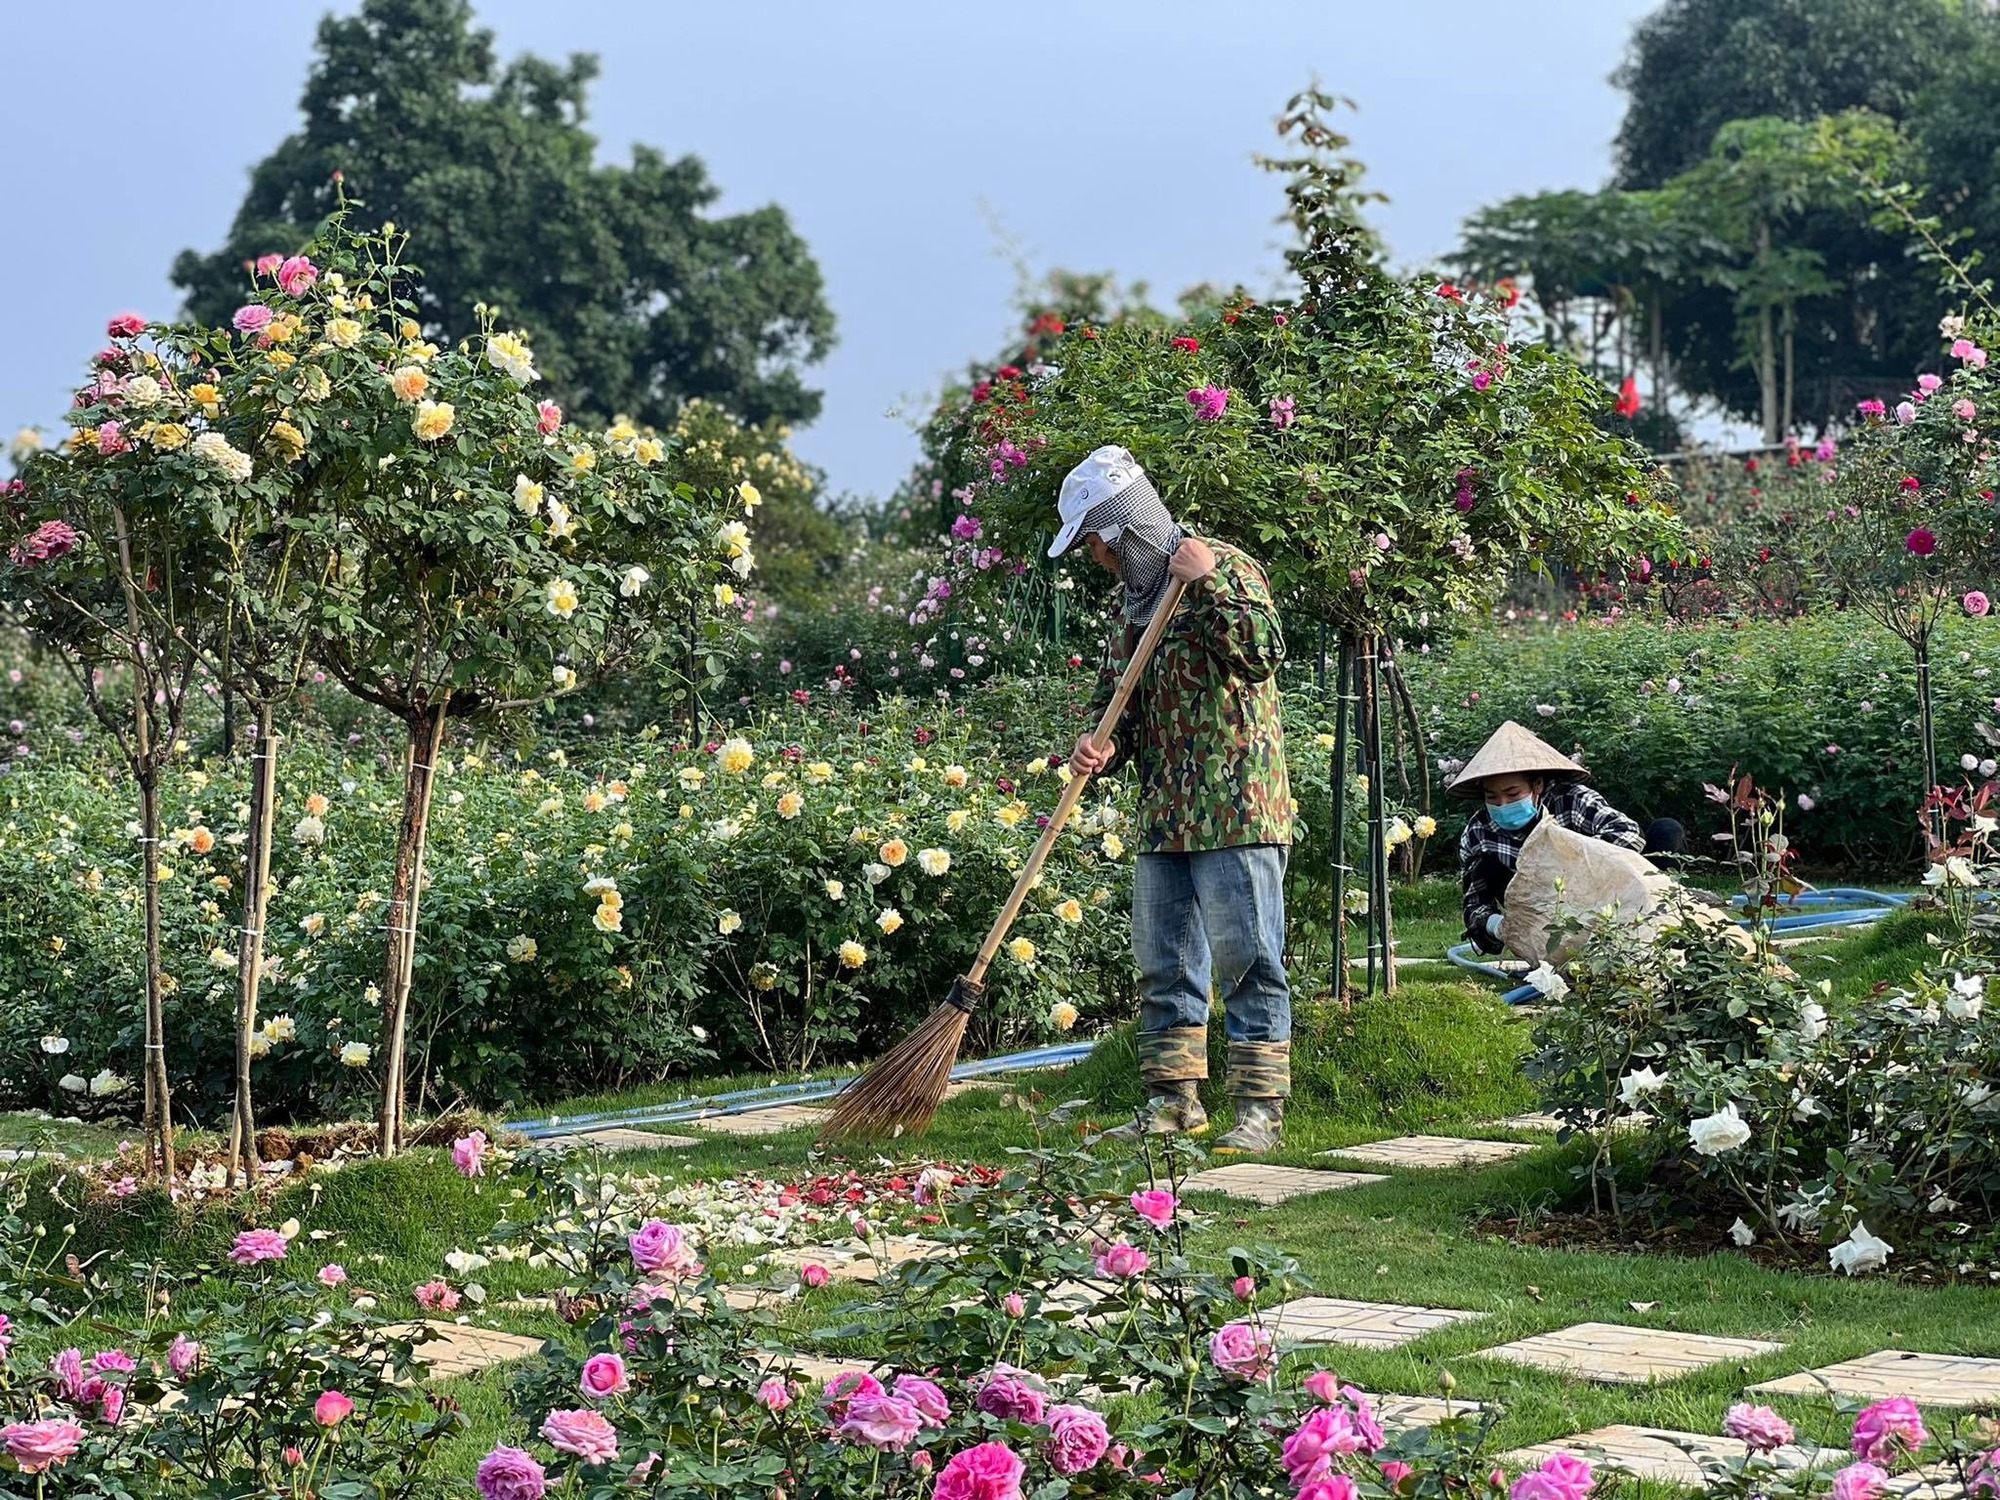 Mùng 3 Tết đến thăm vườn hồng rộng 6.000m² của người phụ nữ Hà Nội - Ảnh 5.